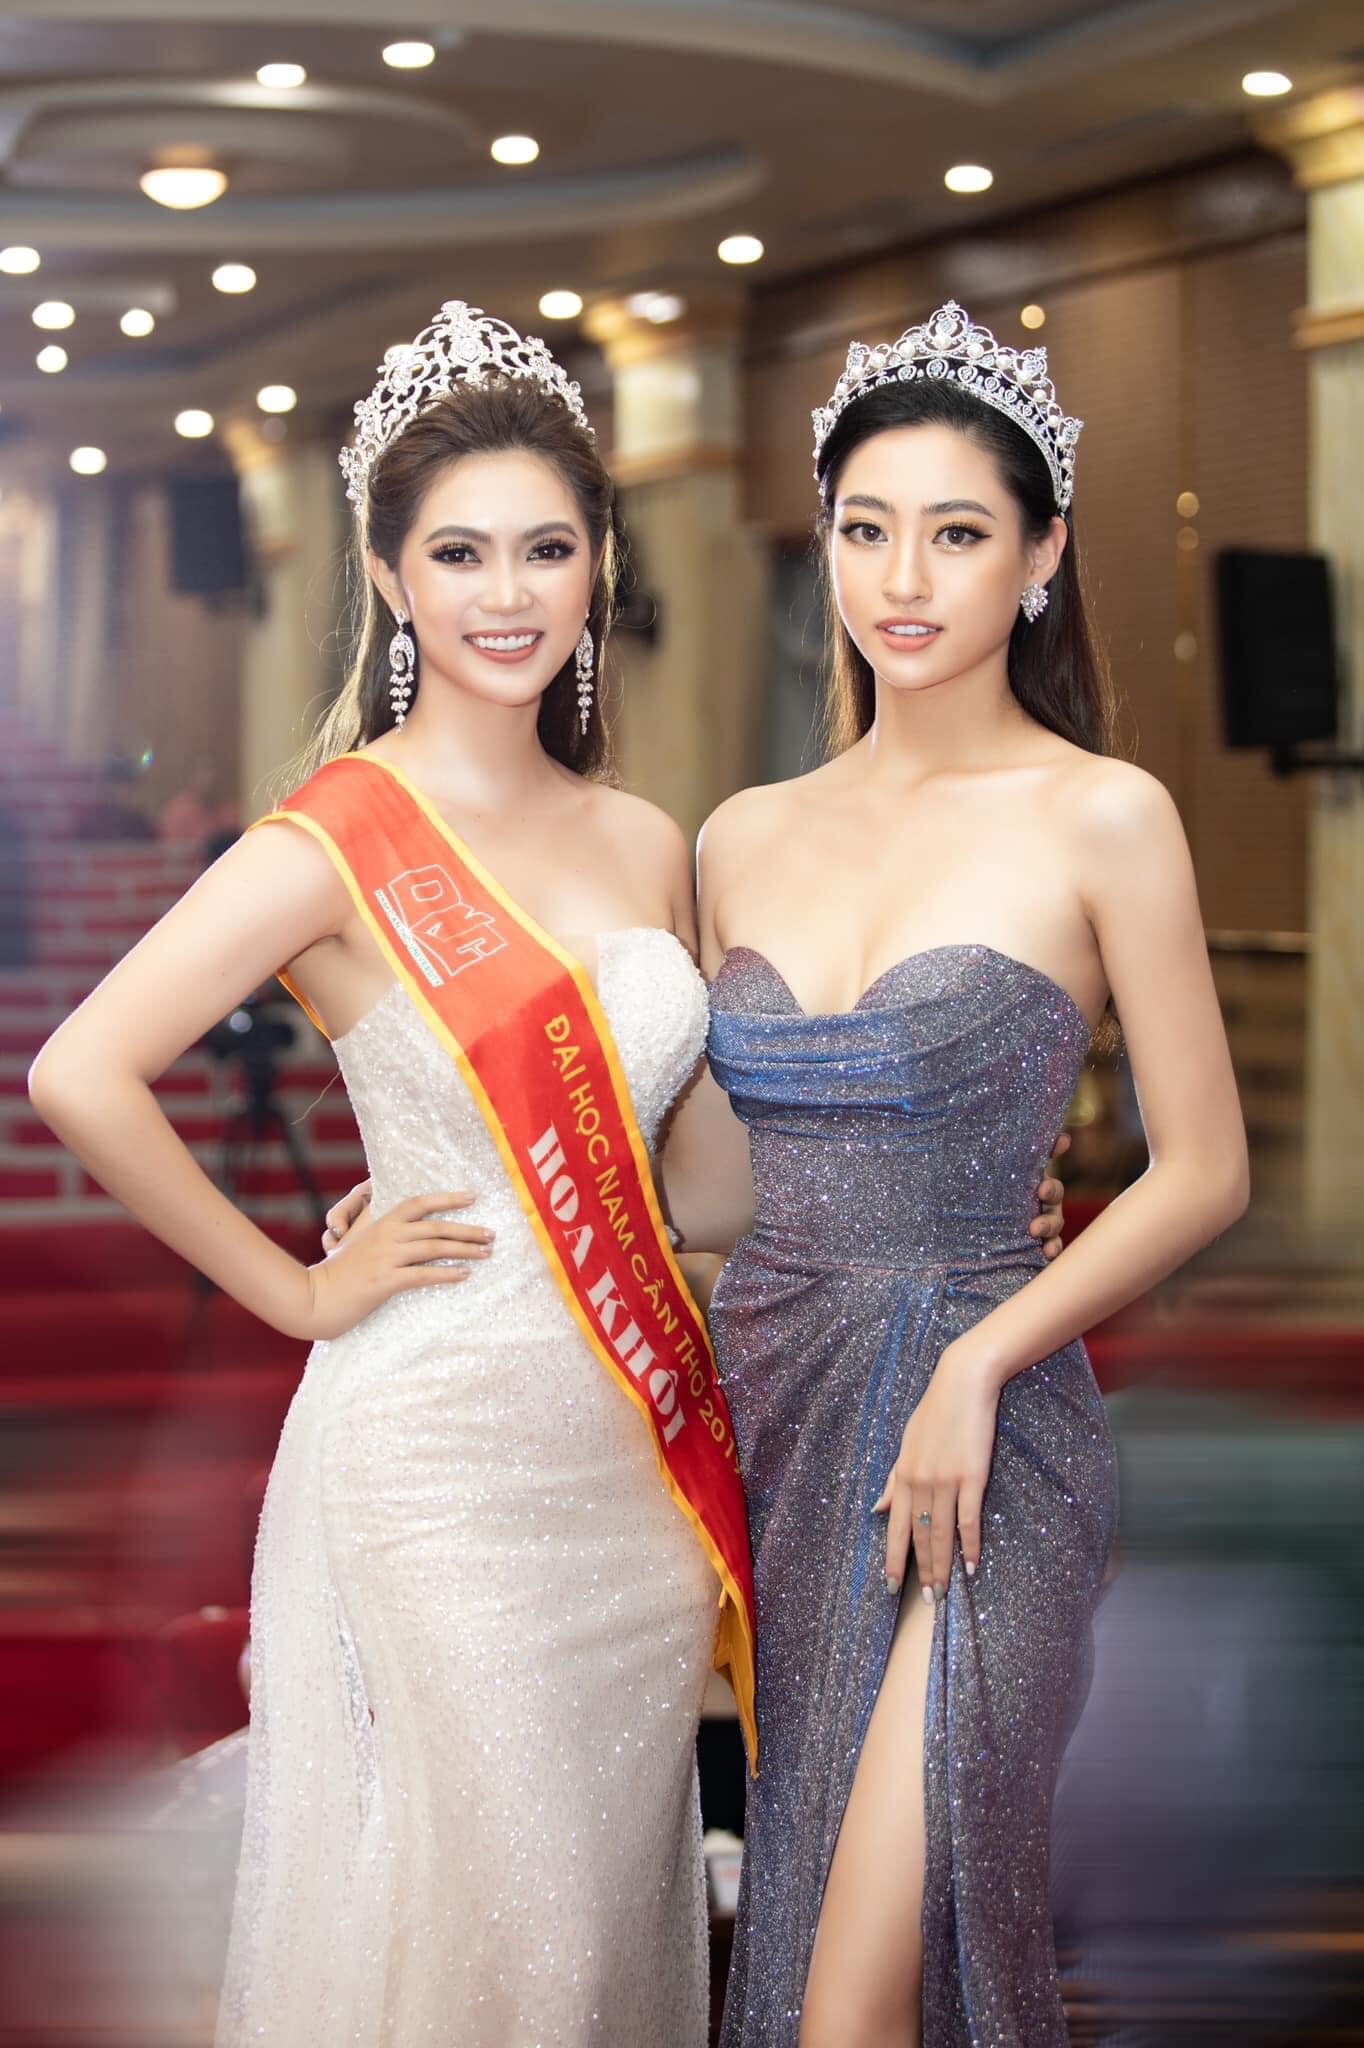 Việt Nam vừa có thêm một Hoa hậu, nhan sắc thế nào mà 'dành cả thanh xuân để thi sắc đẹp'? - ảnh 5